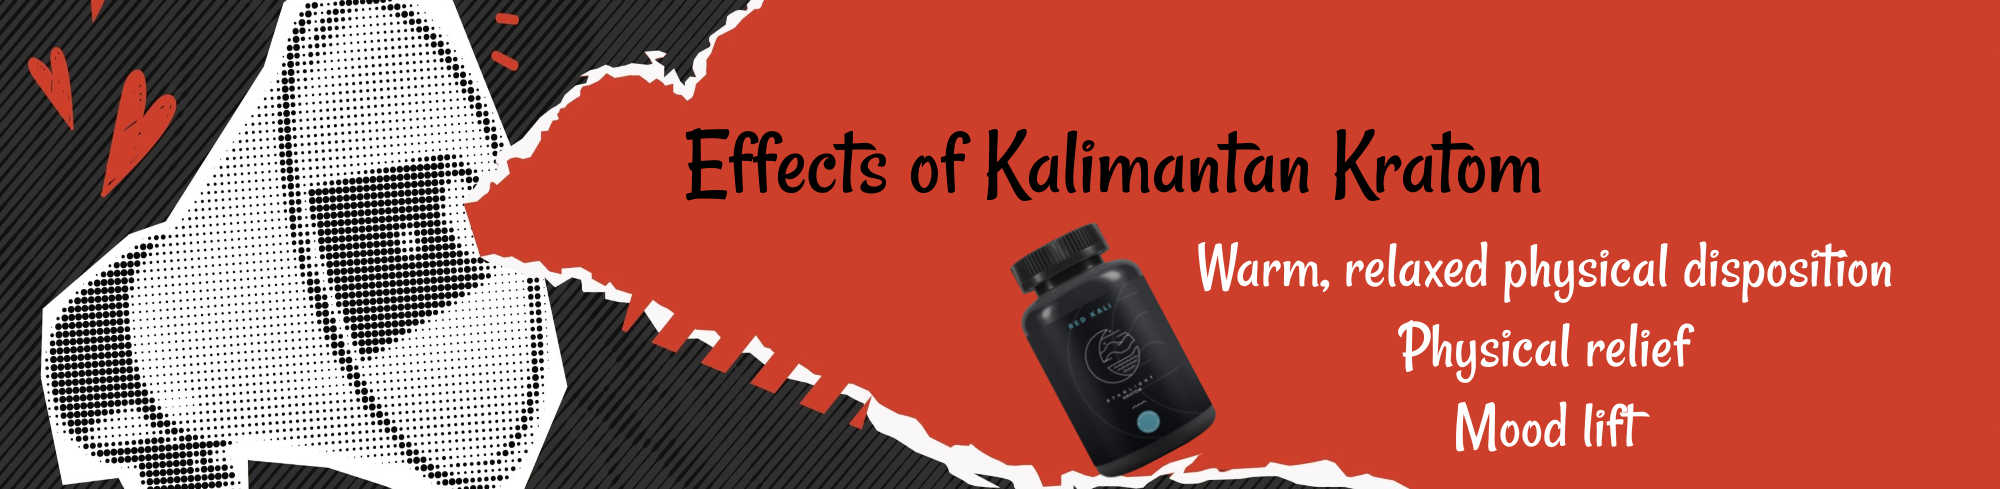 image of kali kratom effects